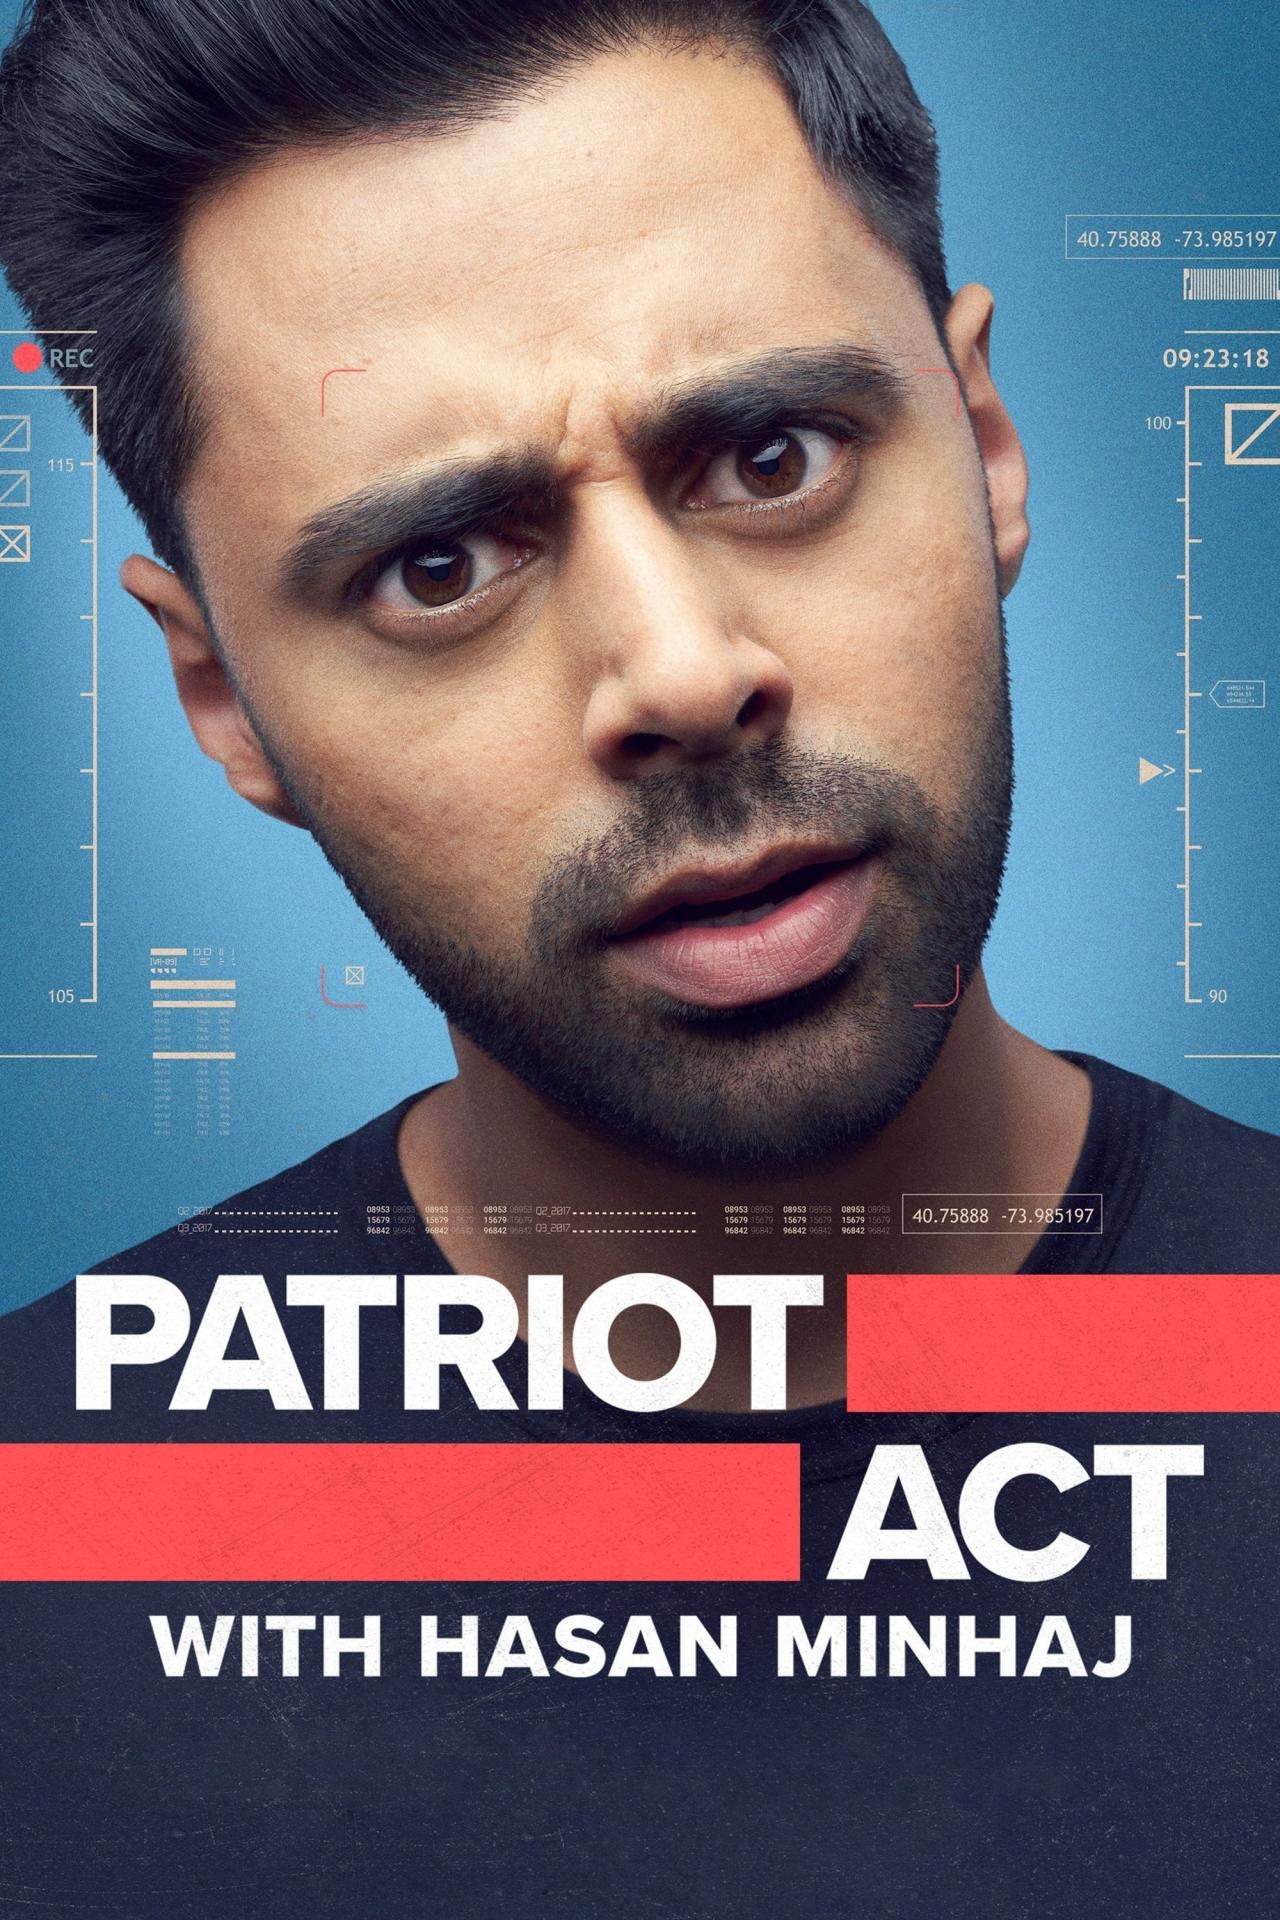 Affiche de la série Hasan Minhaj : Un patriote américain